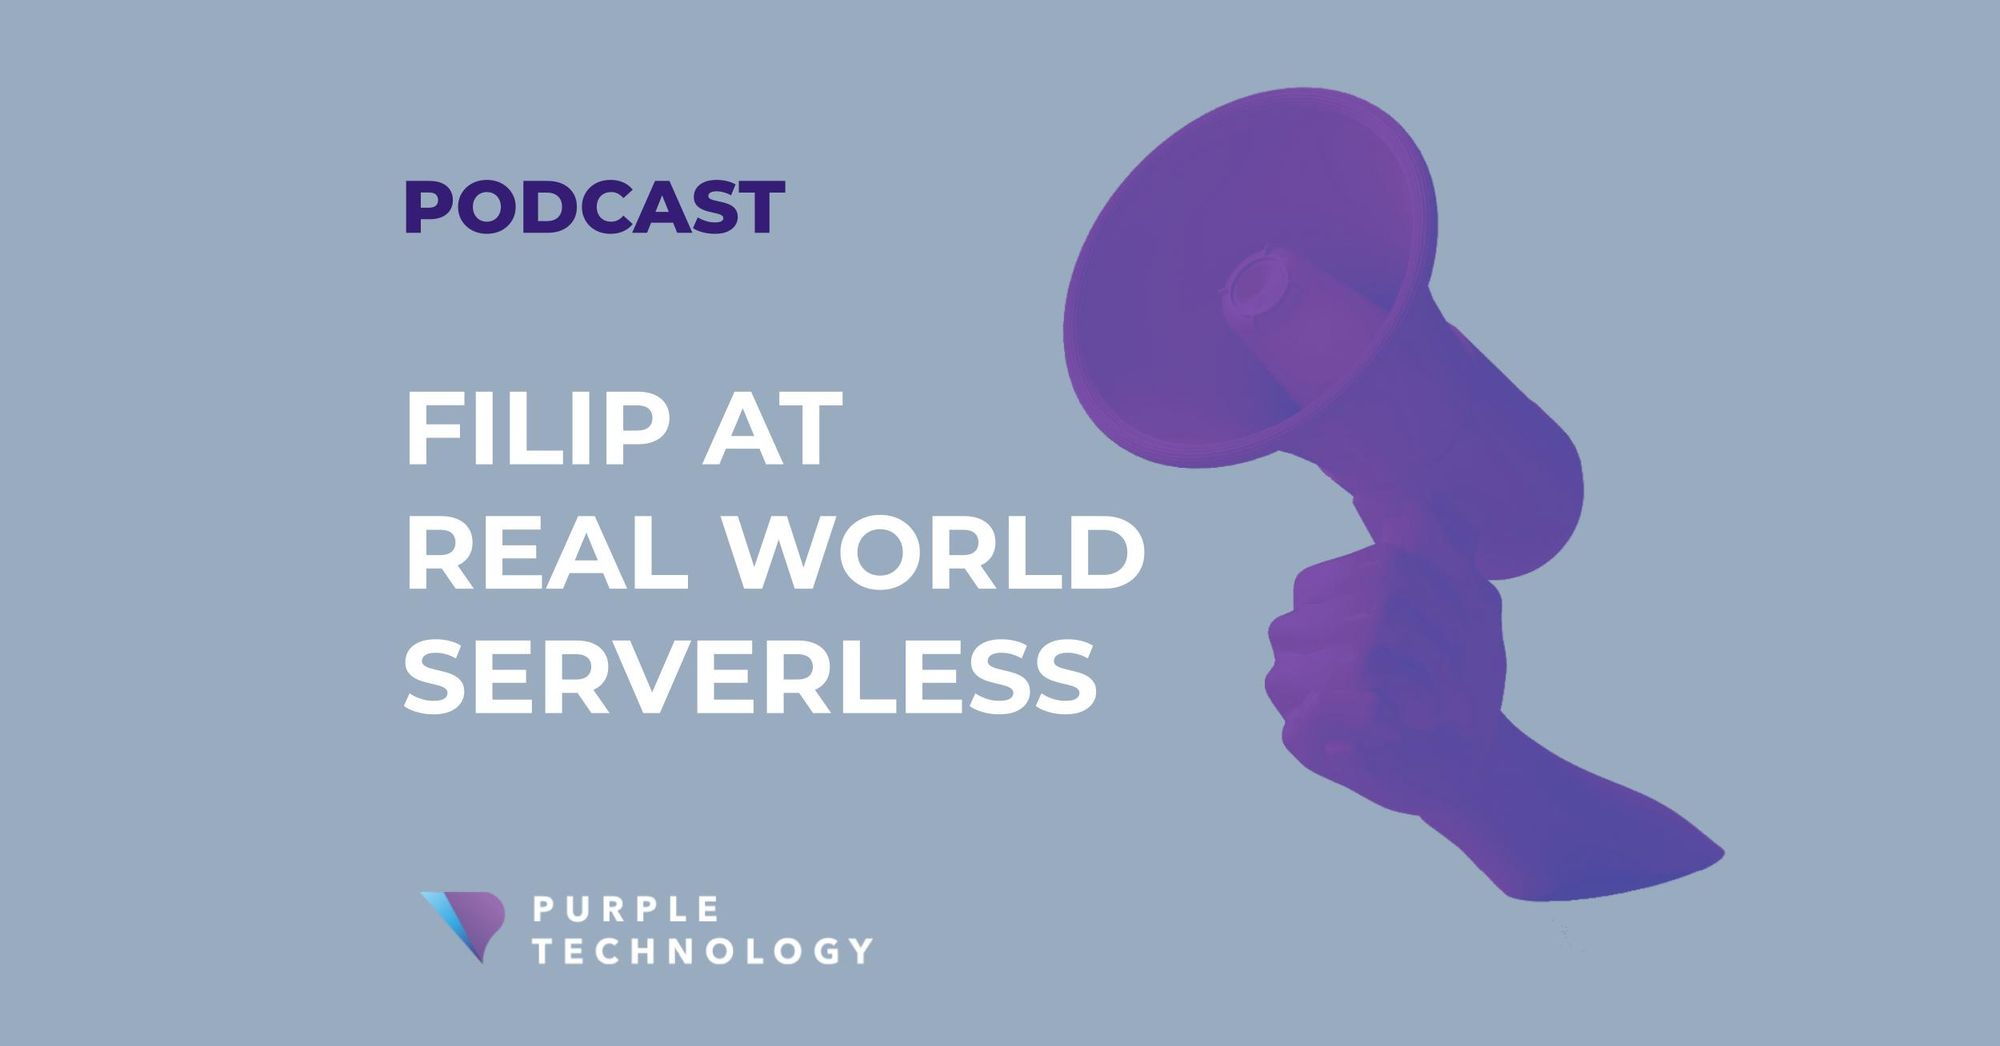 Filip at Real World Serverless podcast